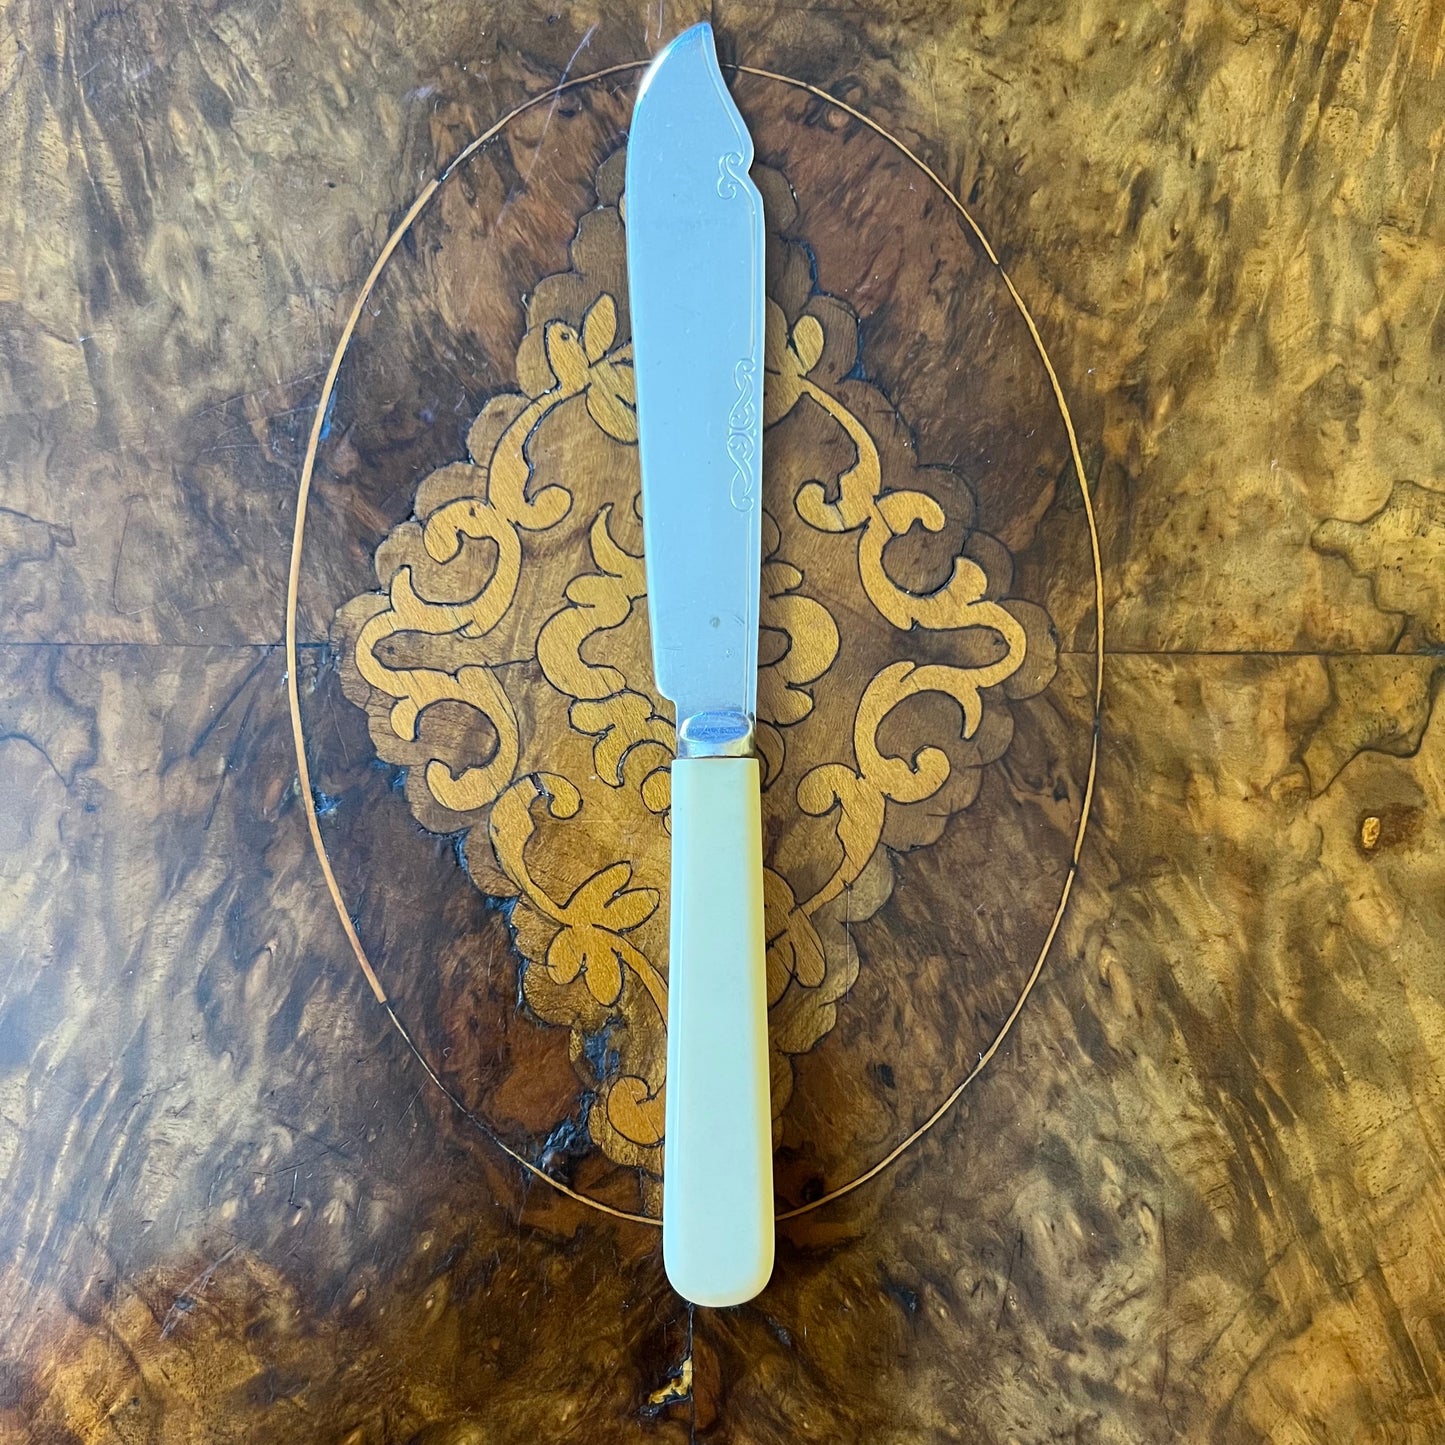 Vintage Silver Plated Knives & Forks Set Of 12